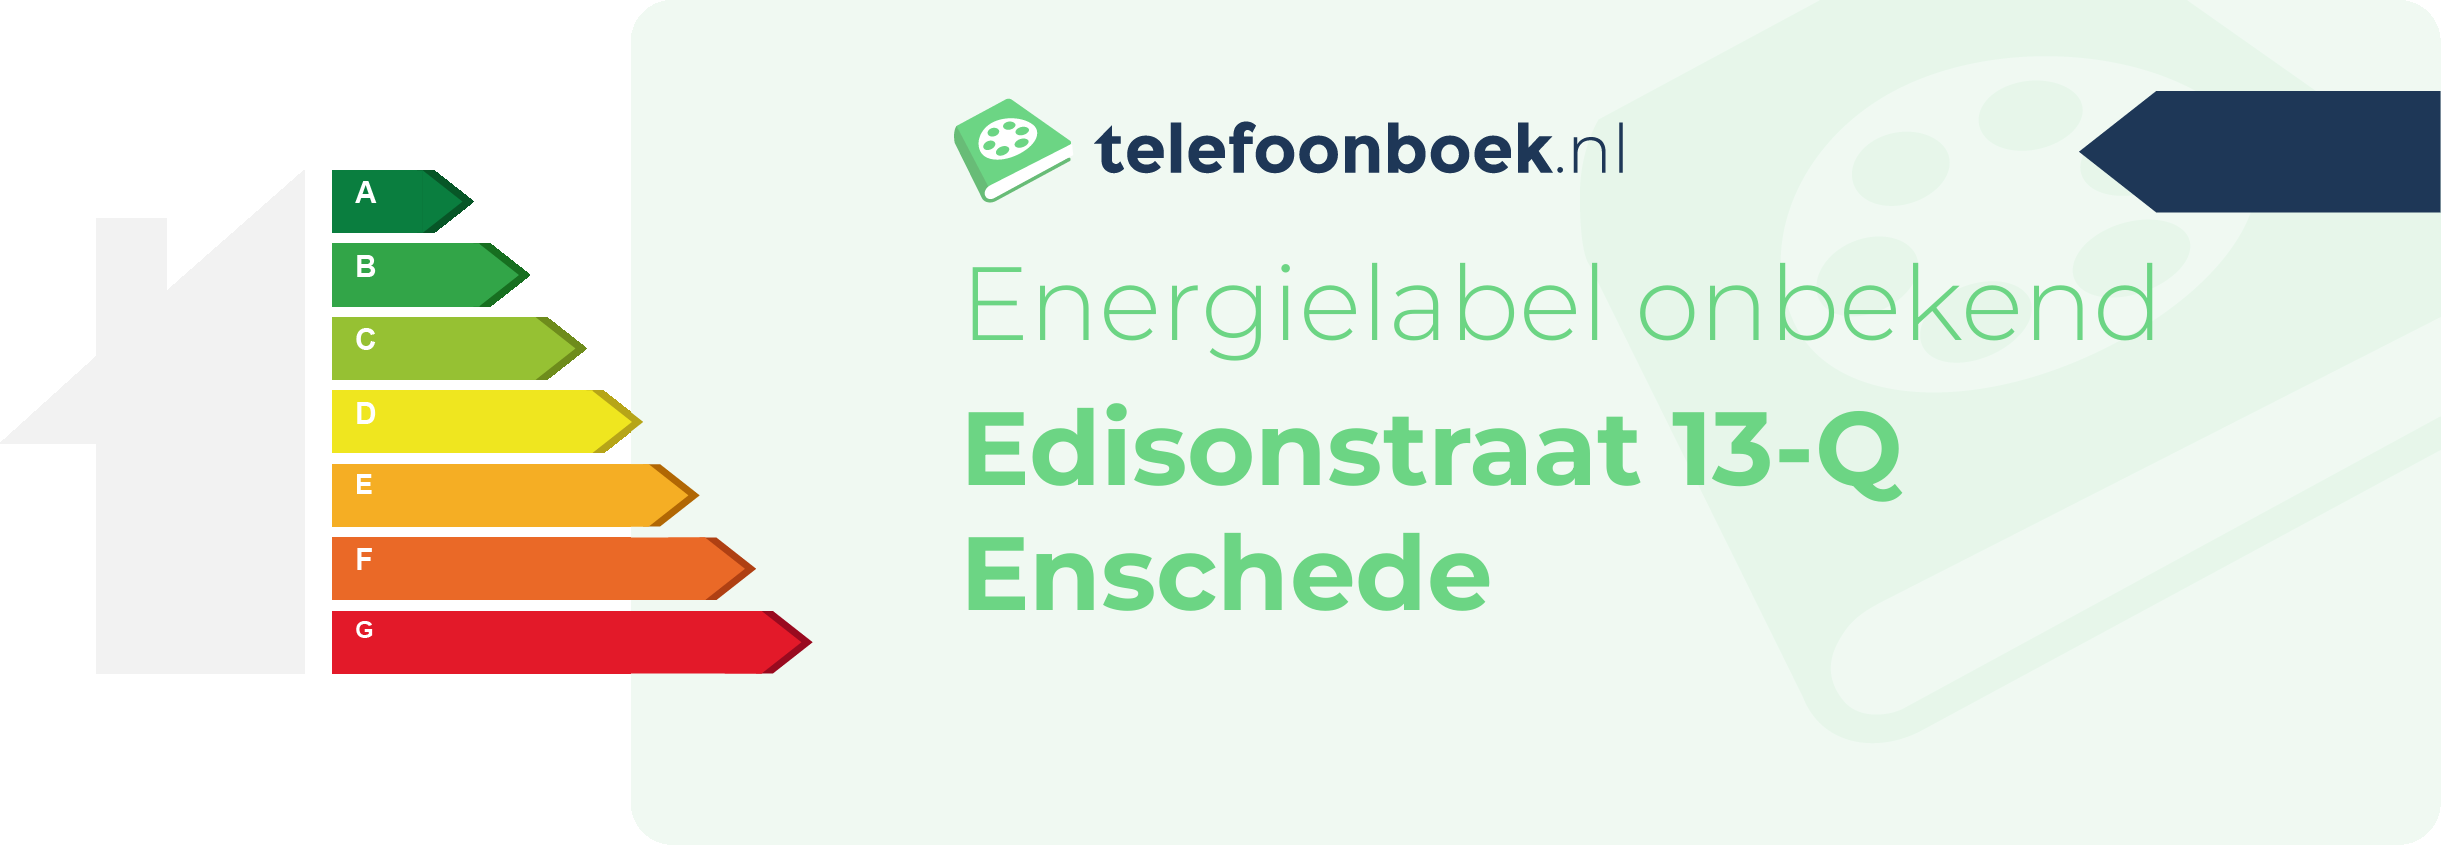 Energielabel Edisonstraat 13-Q Enschede